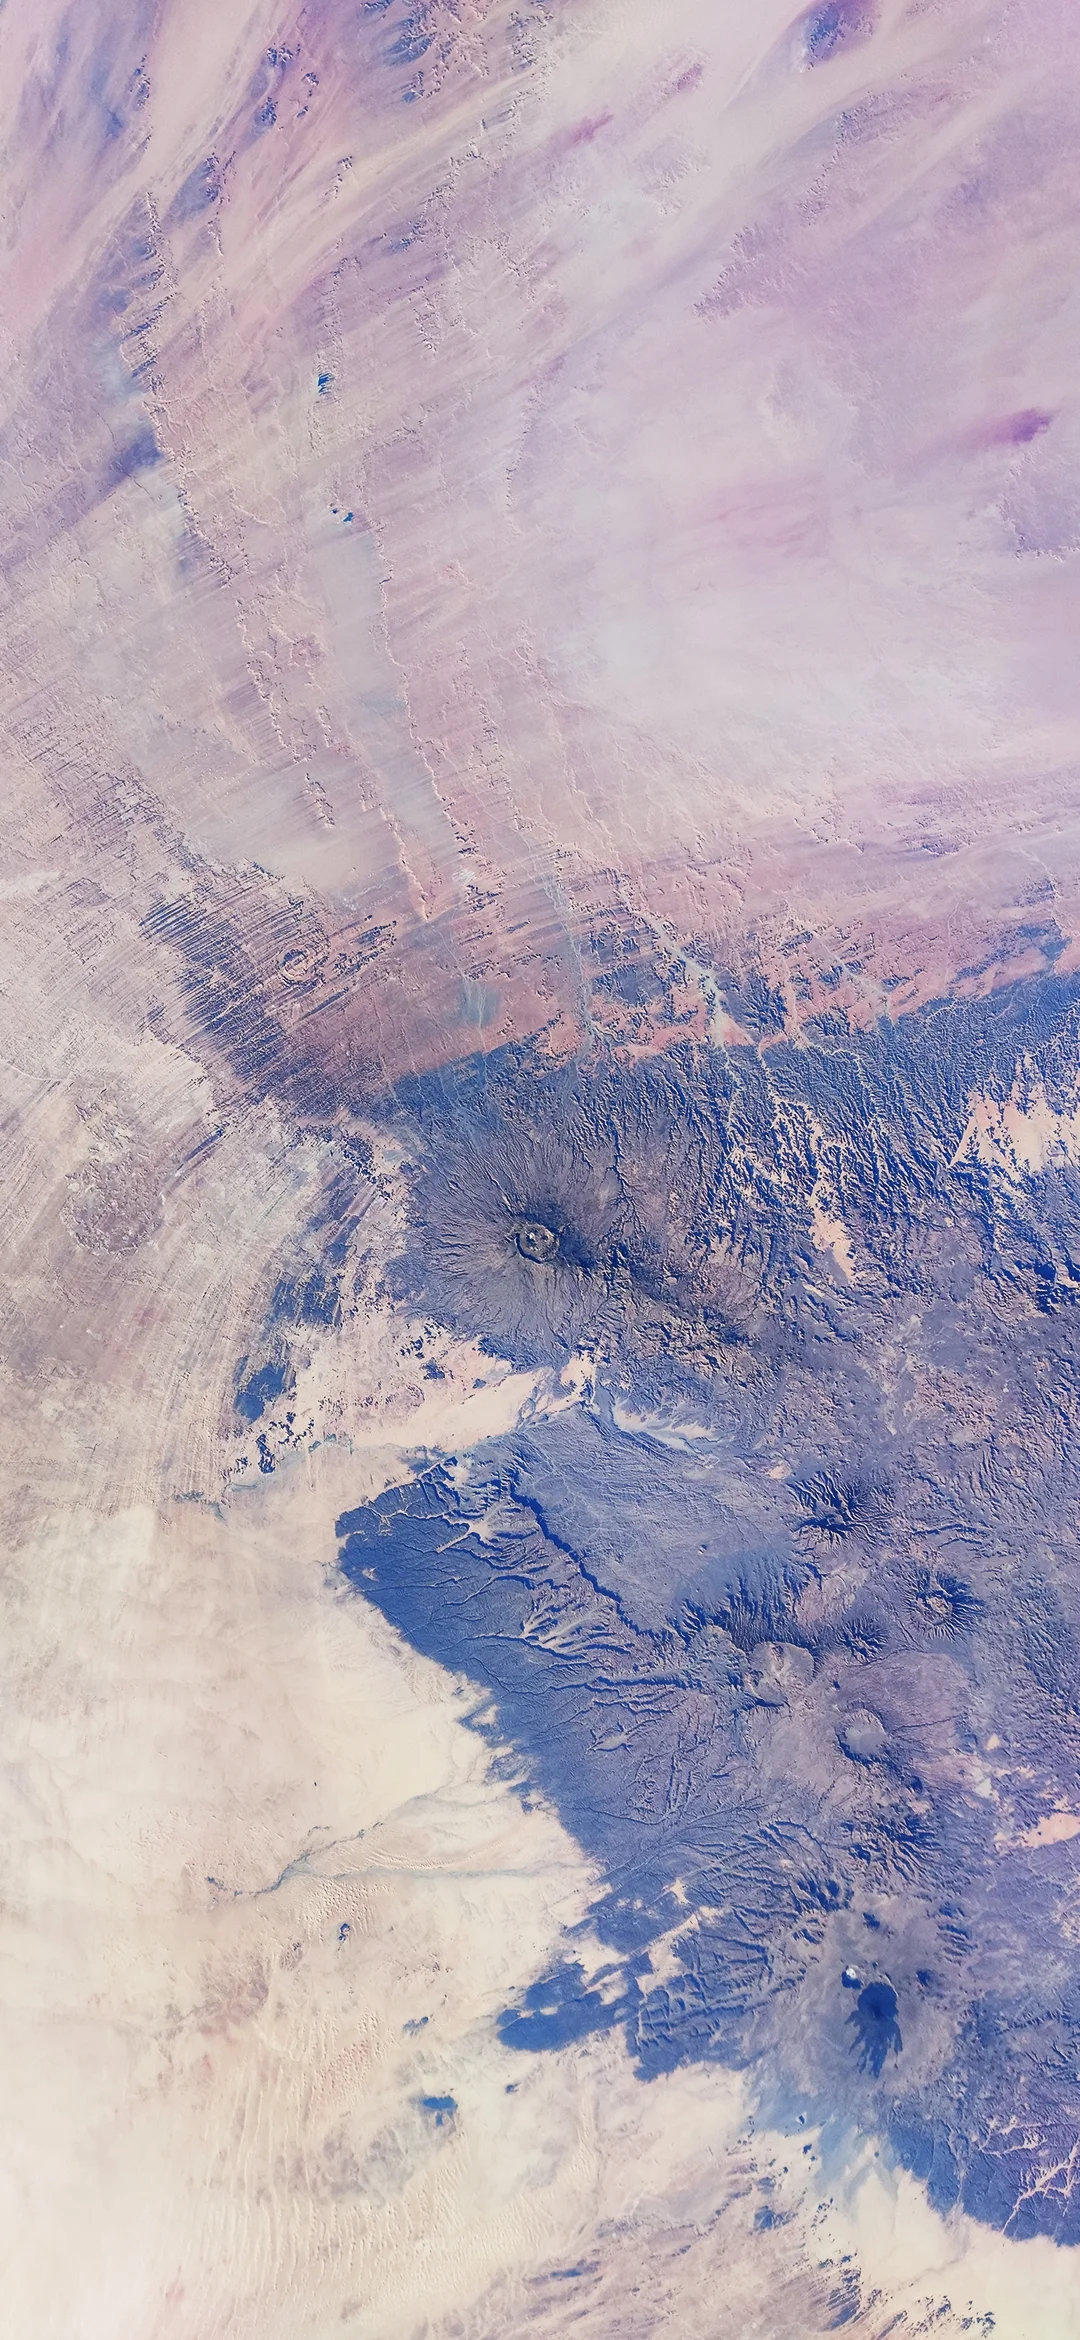 9 великолепных снимков Земли, сделанных на камеру Xiaomi Mi 10 Pro - фото 4